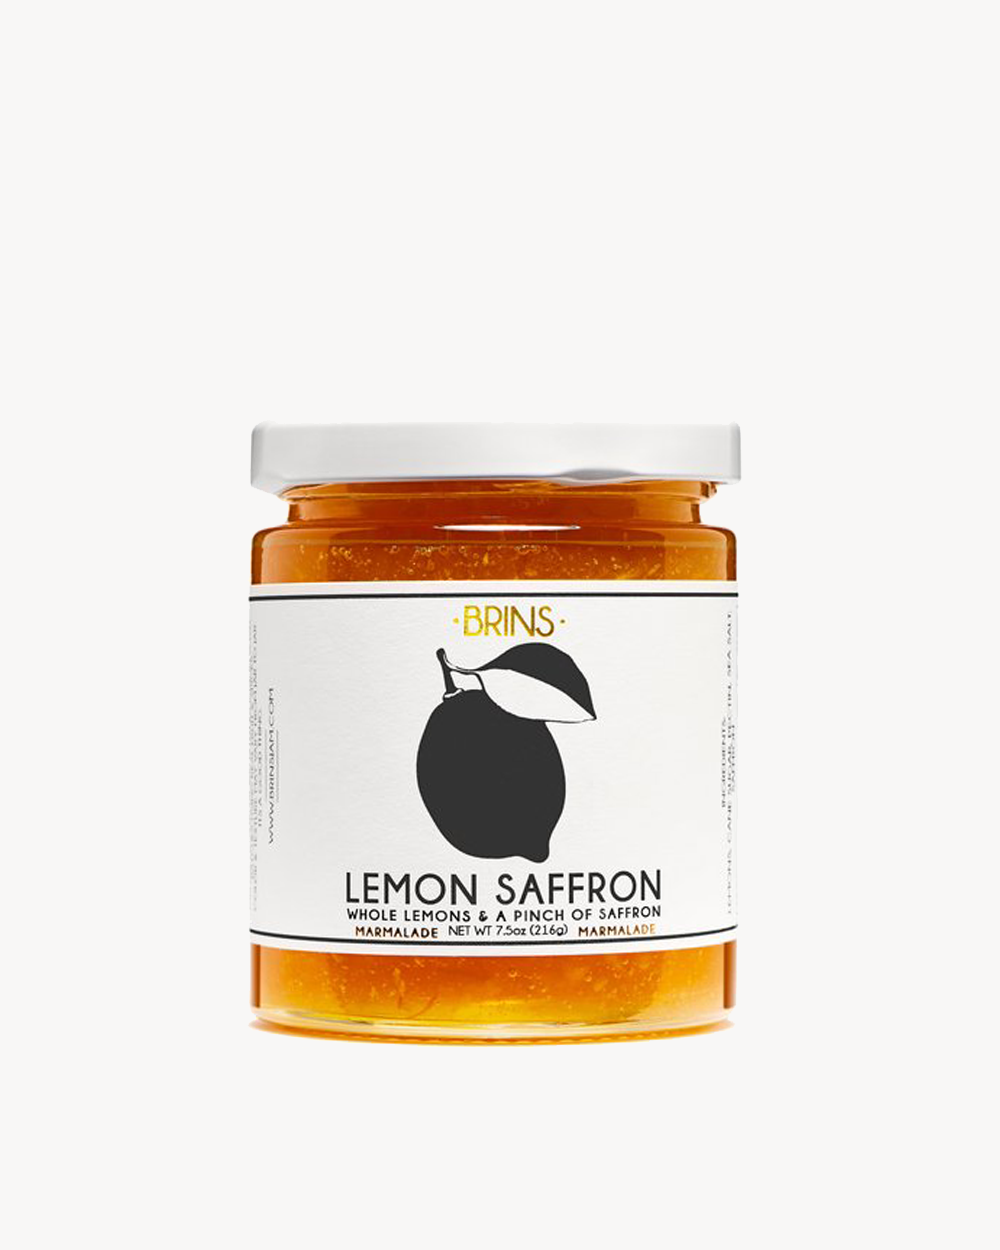 Lemon Safron Jam 7.5oz